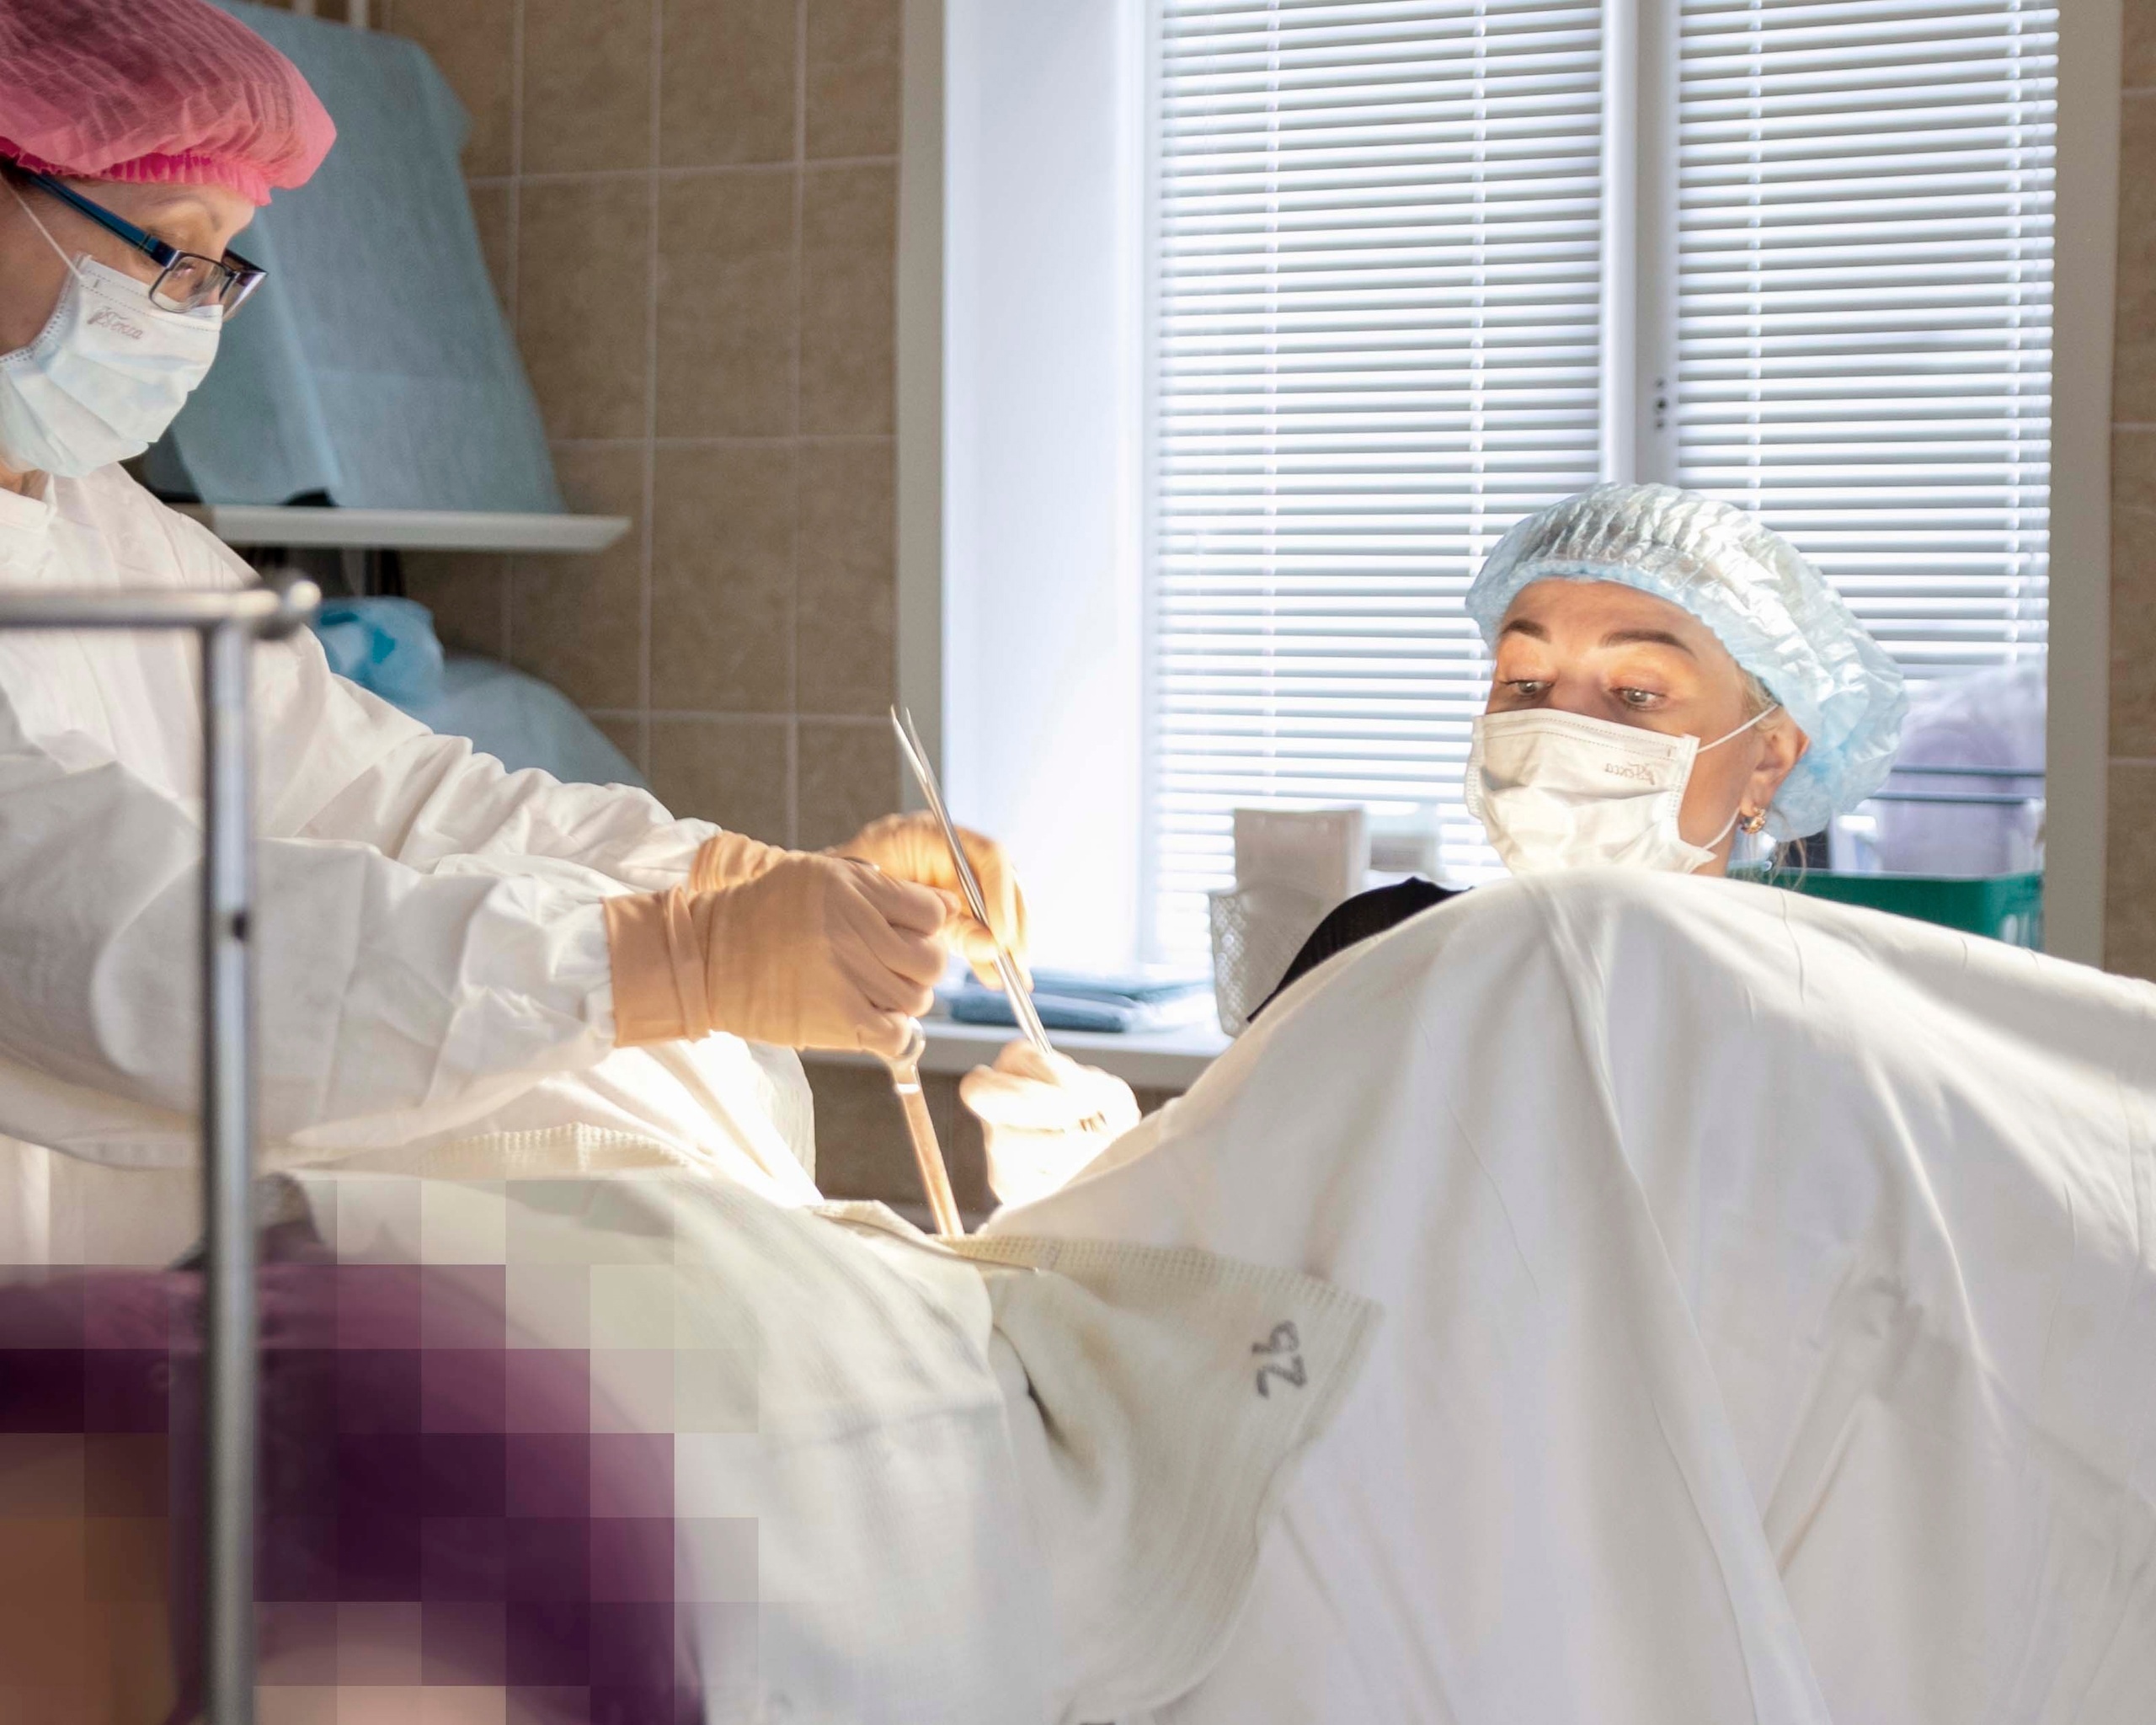 Кировские врачи подарили женщине возможность стать мамой, несмотря на опухоль